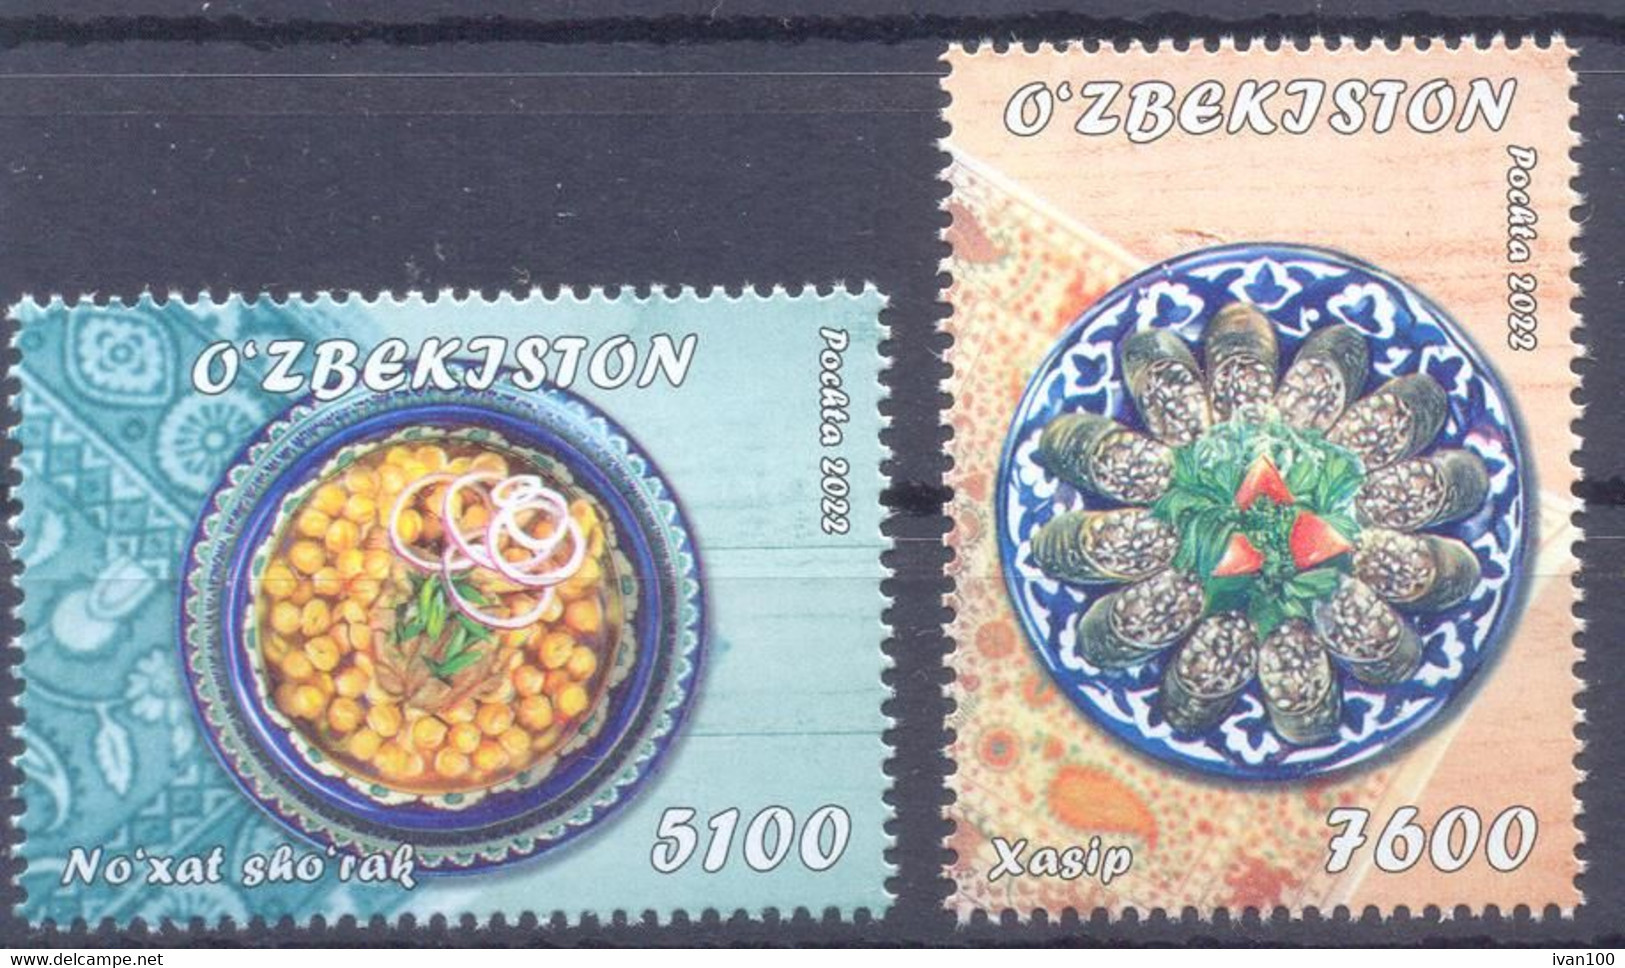 2022. Uzbekistan, National Cuisine, 2v, Mint/** - Ouzbékistan